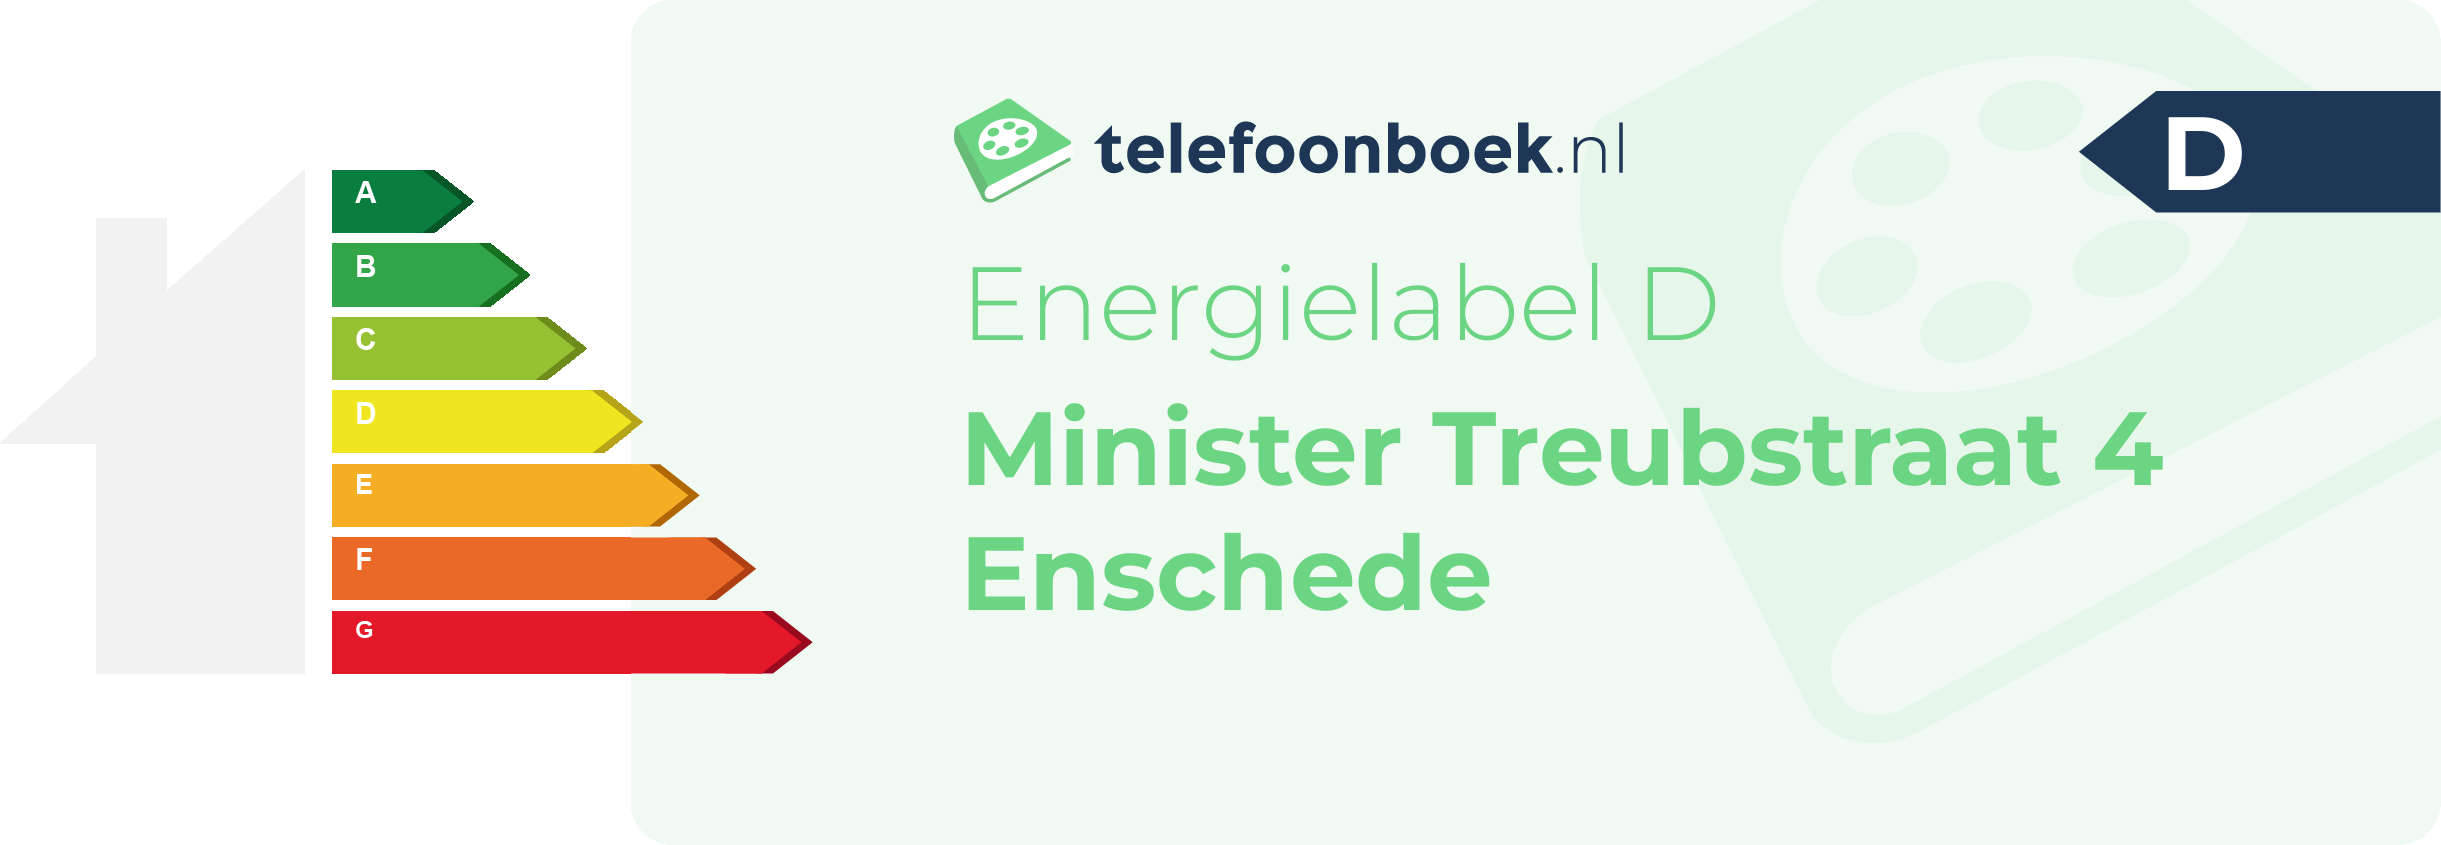 Energielabel Minister Treubstraat 4 Enschede